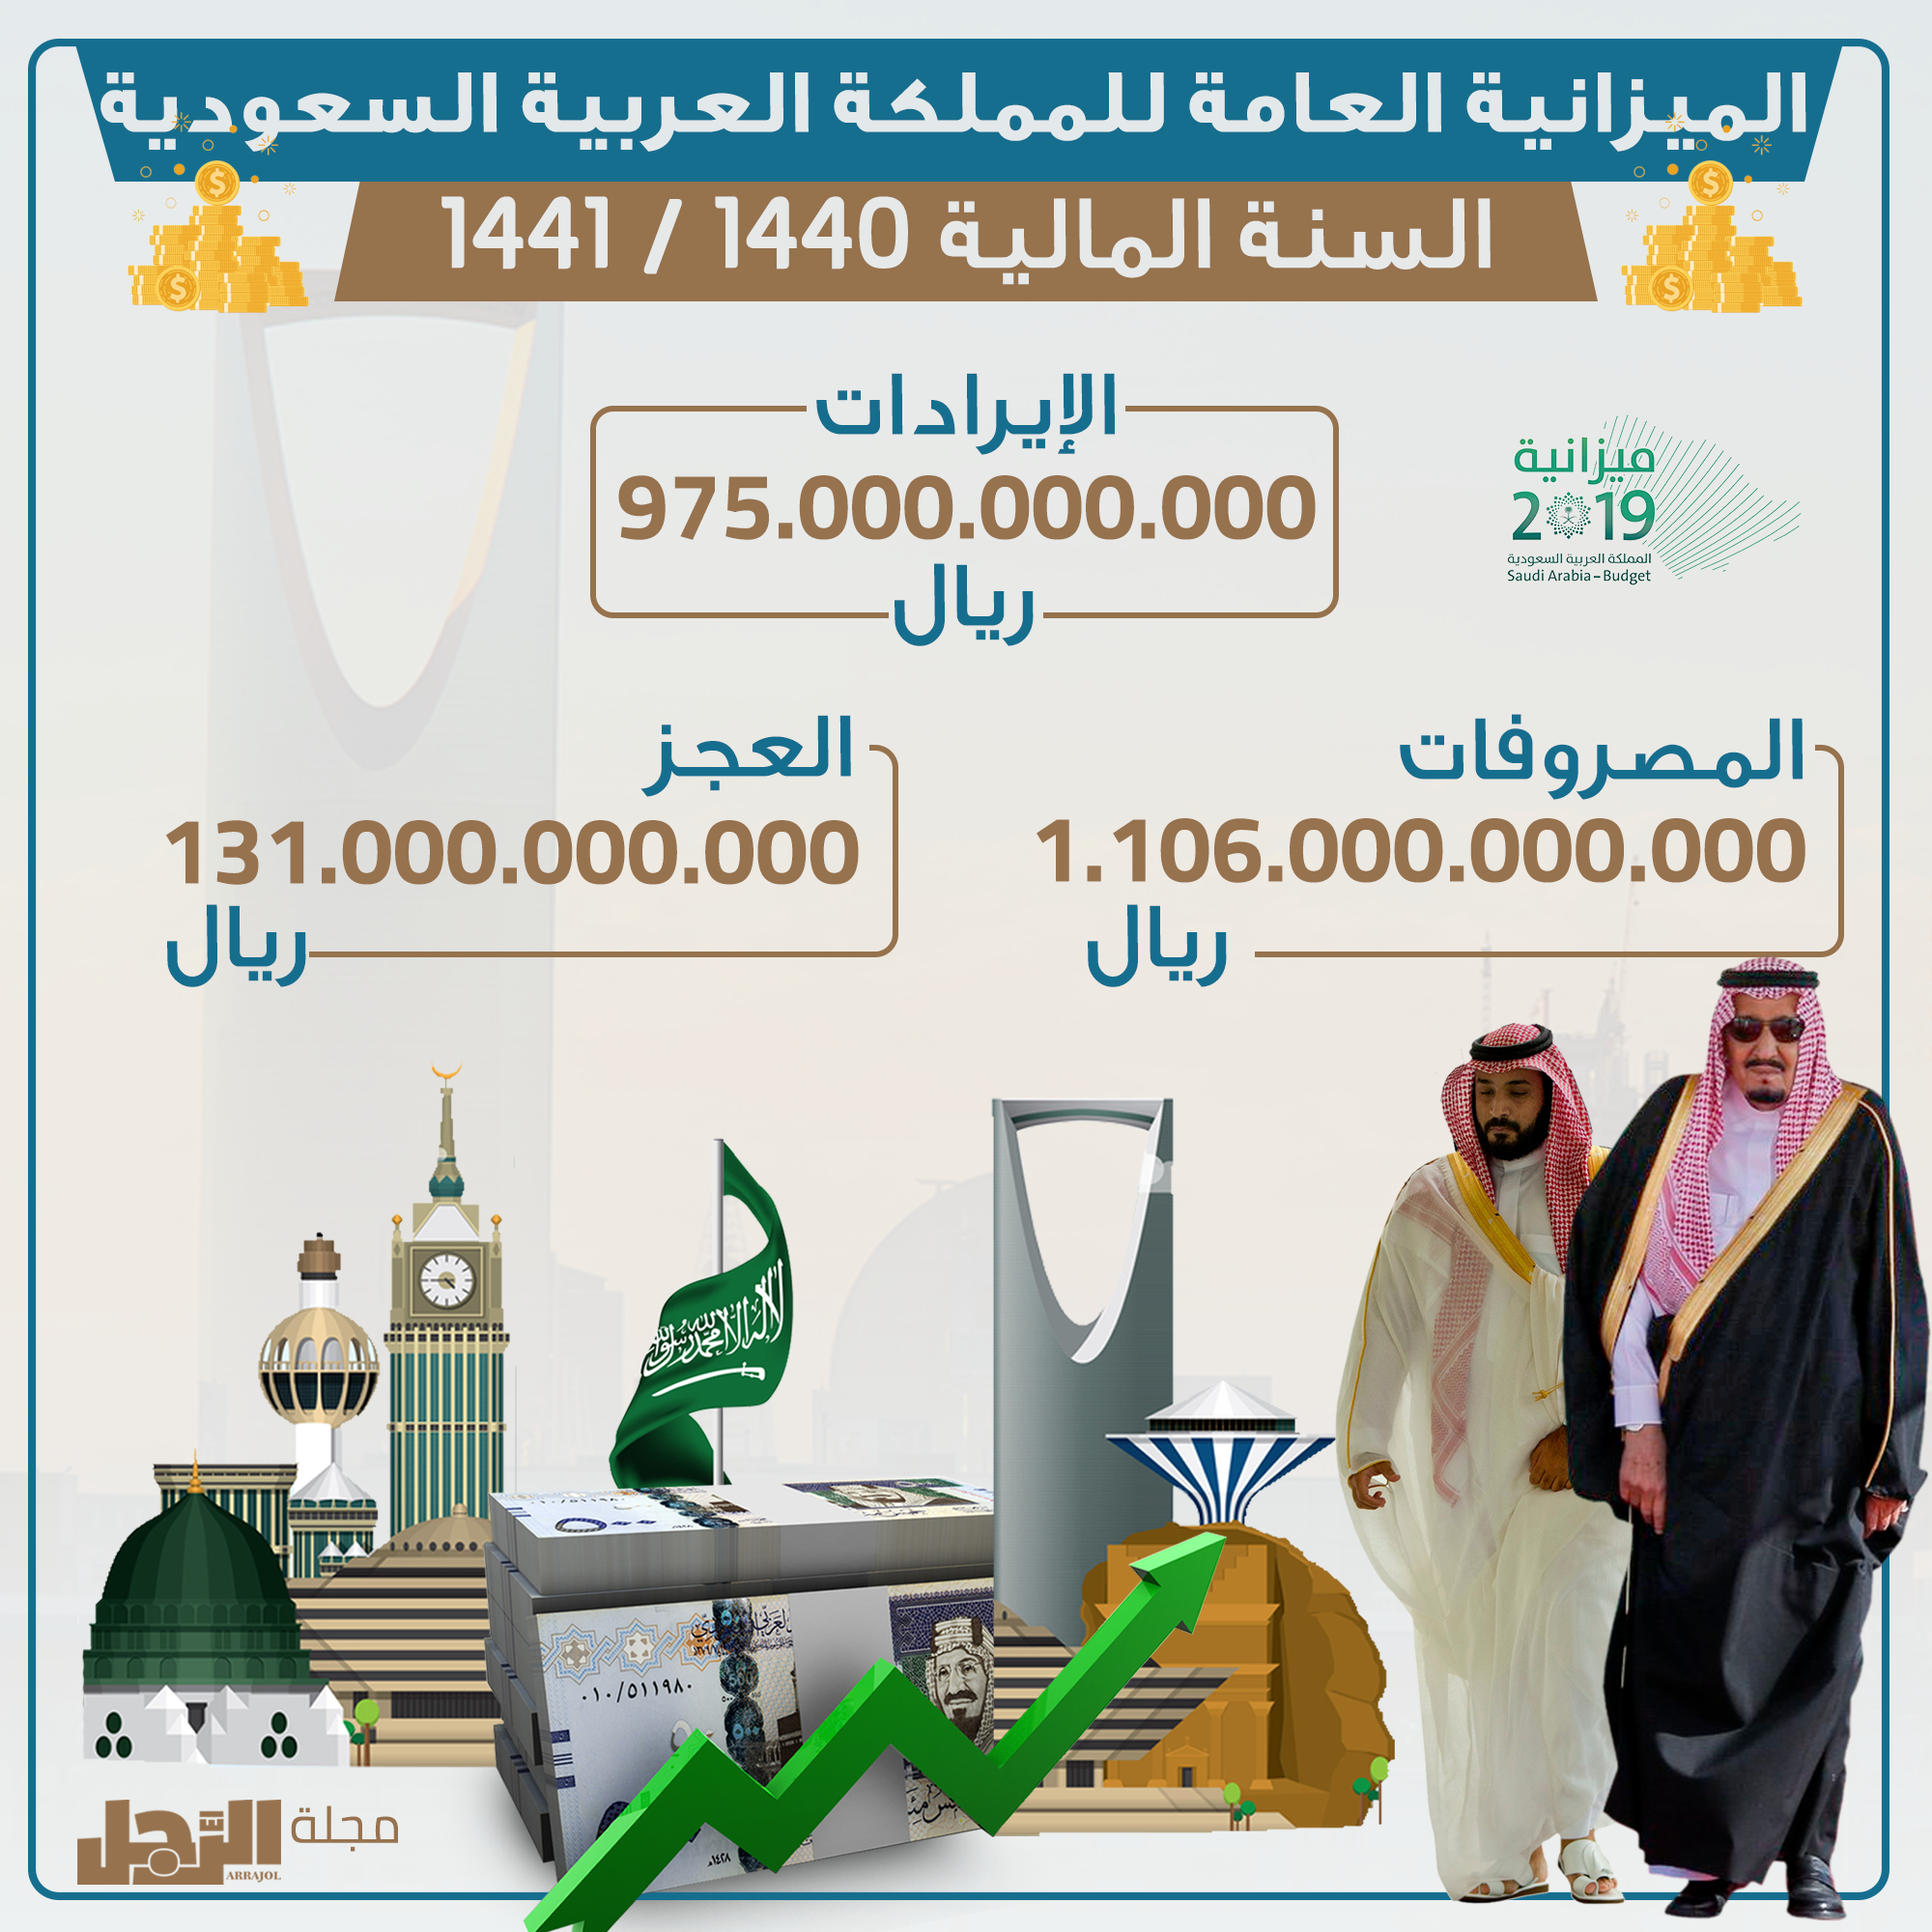 انفوجراف تعرف على أبرز تصريحات الوزراء في ملتقي الميزانية السعودية 2019 الرجل